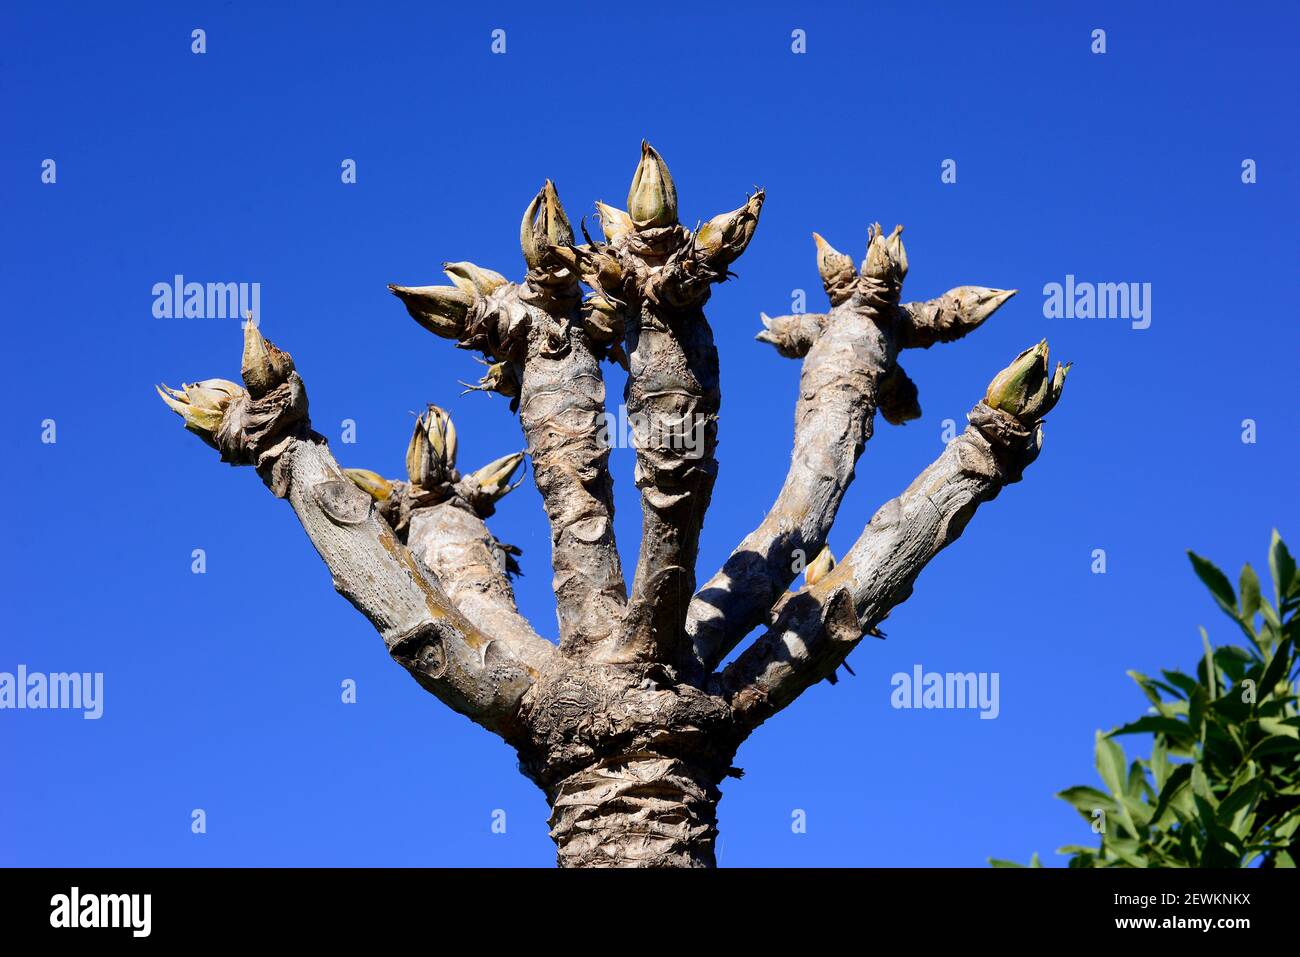 Stachelkohlbaum (Cussonia spicata) ist ein immergrüner Heilbaum, der im Südosten Afrikas beheimatet ist. Knospen. Stockfoto